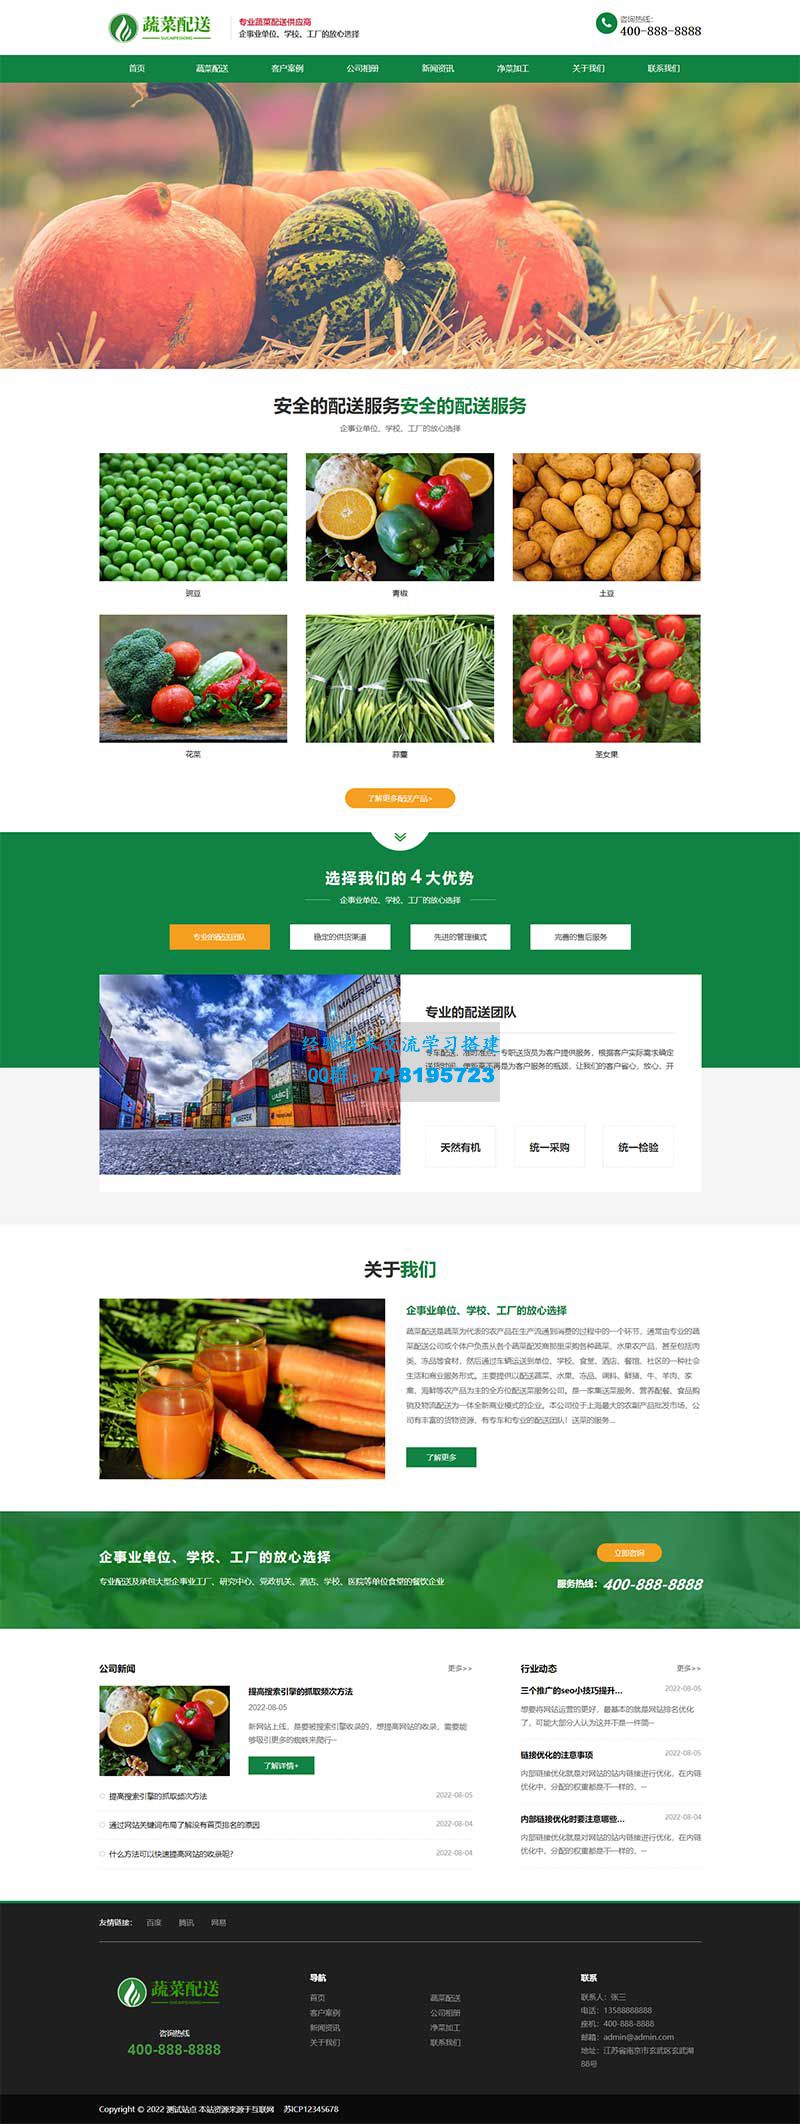     响应式绿色果蔬配送网站源码 蔬菜配送网站pbootcms模板
